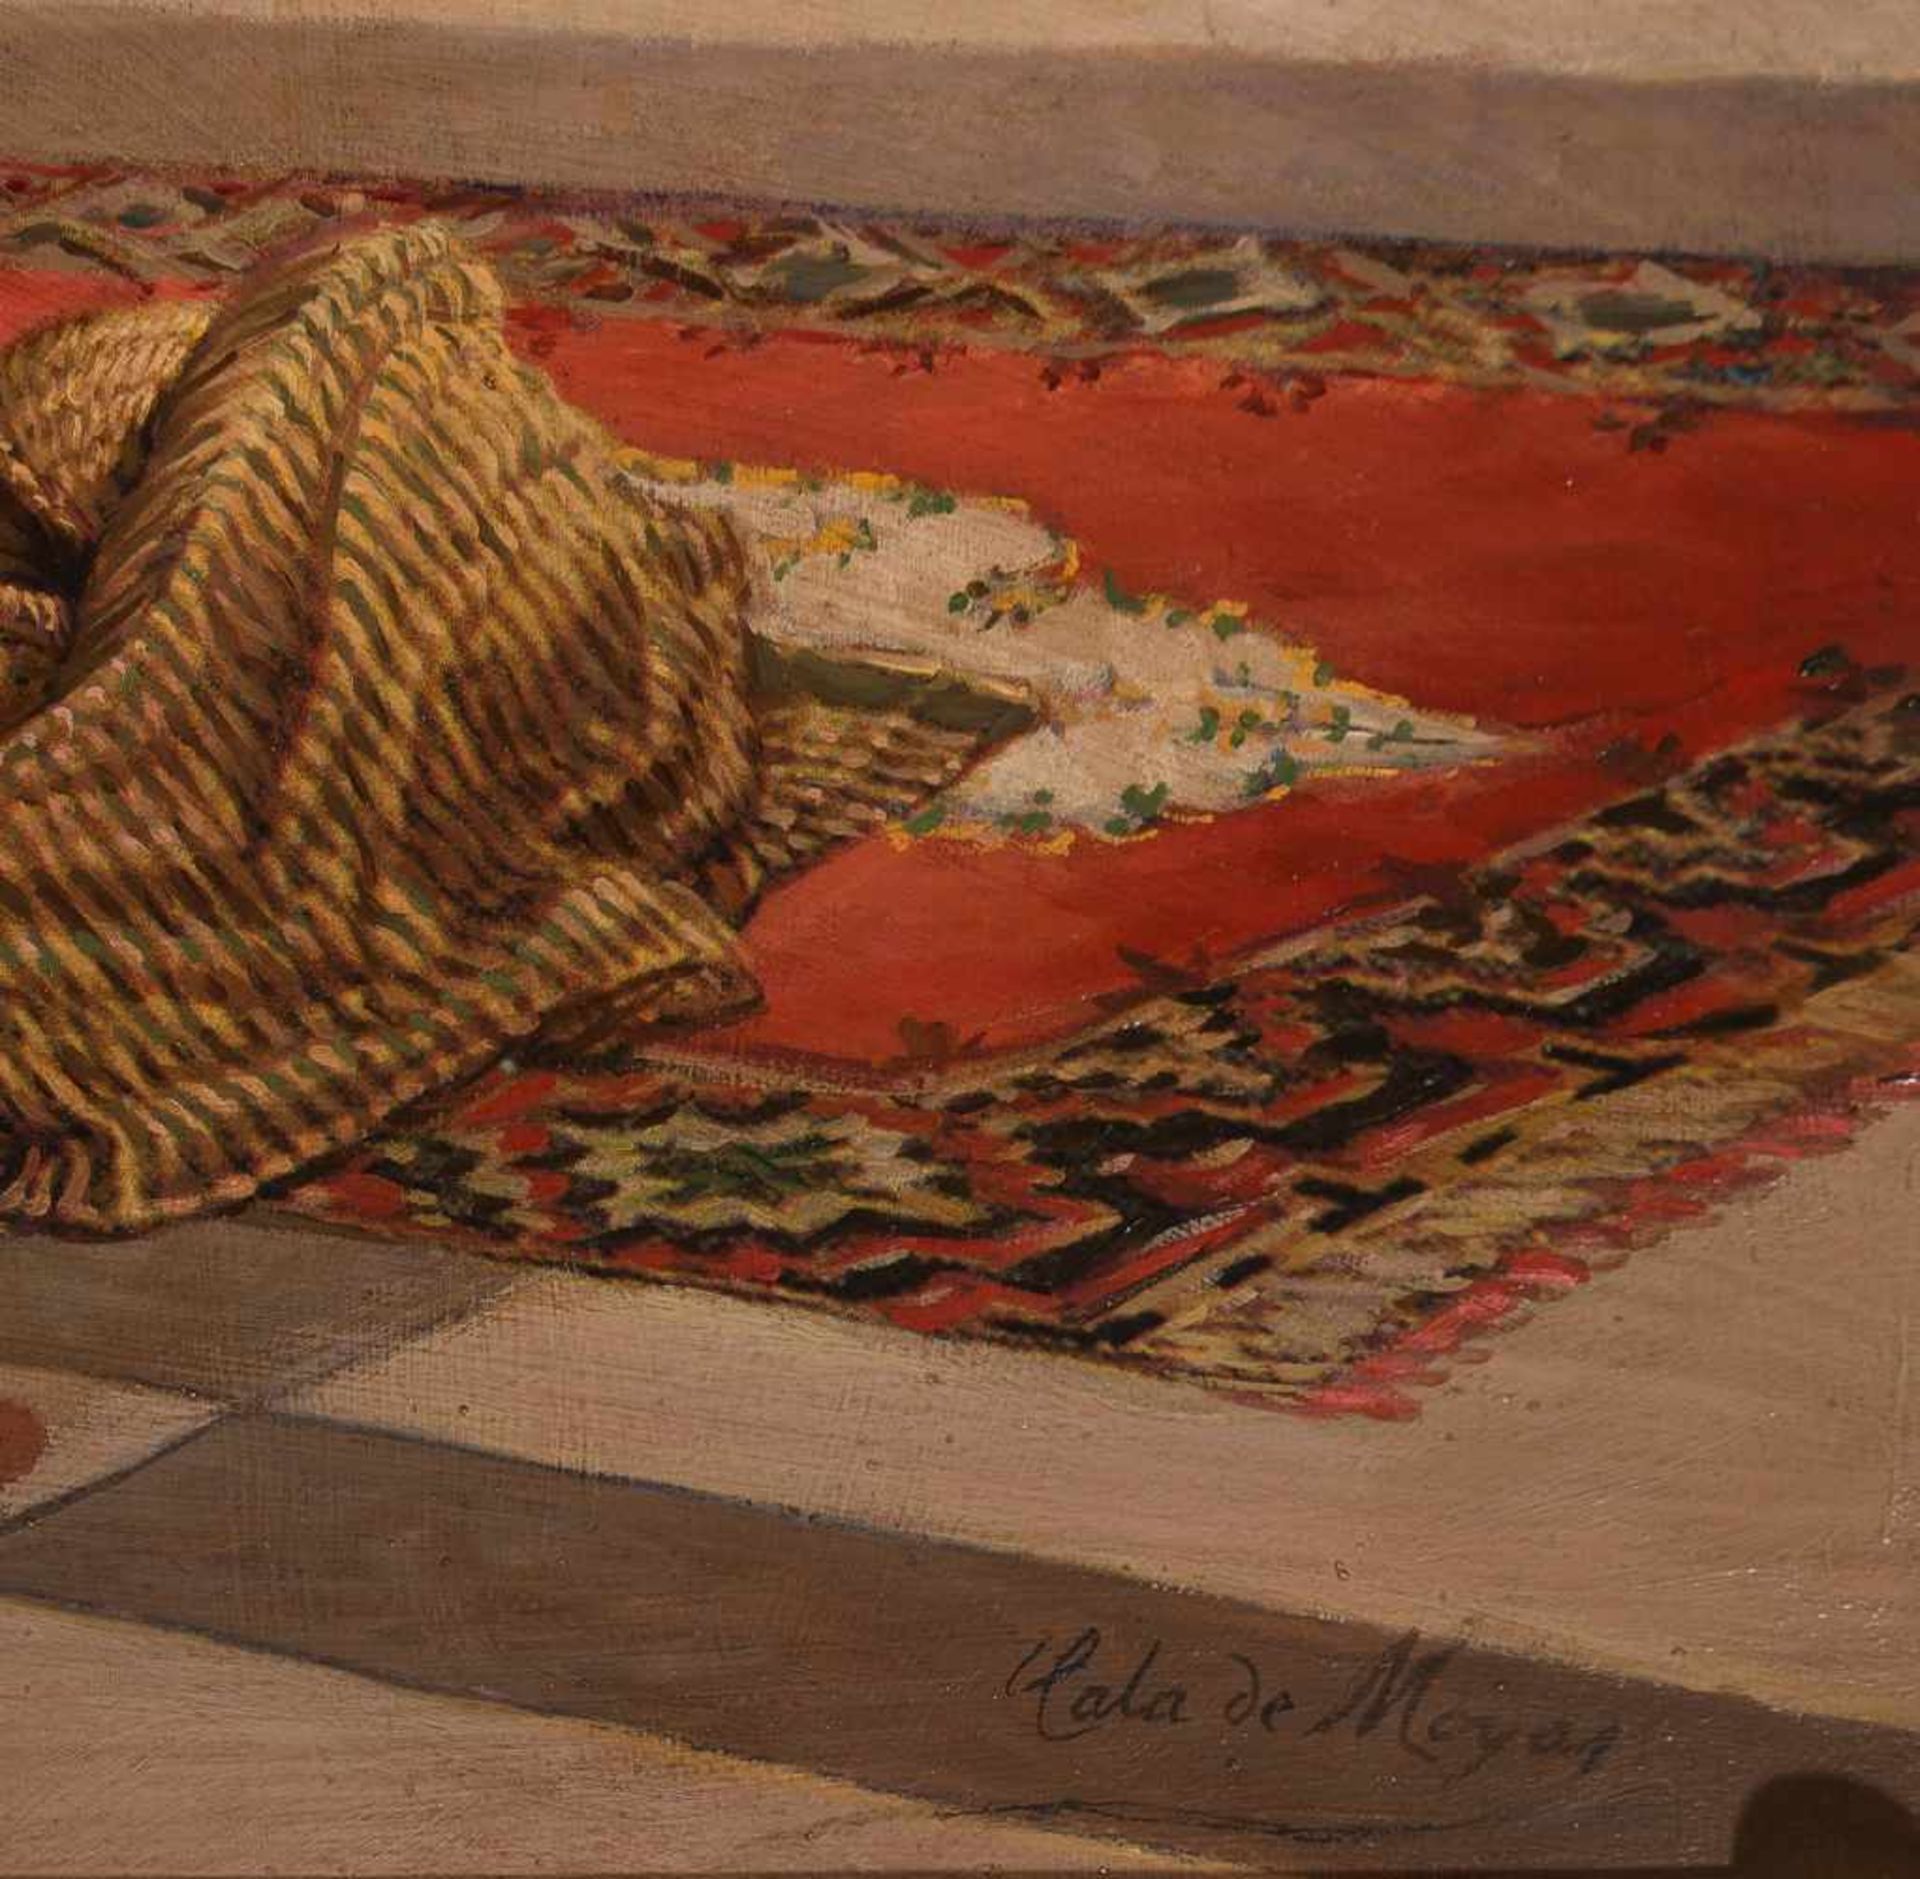 José Cala de Moya (Jerez de la Frontera, 1850 - Paris, 1891)Pair of oils on canvas. Both signed. - Bild 5 aus 15